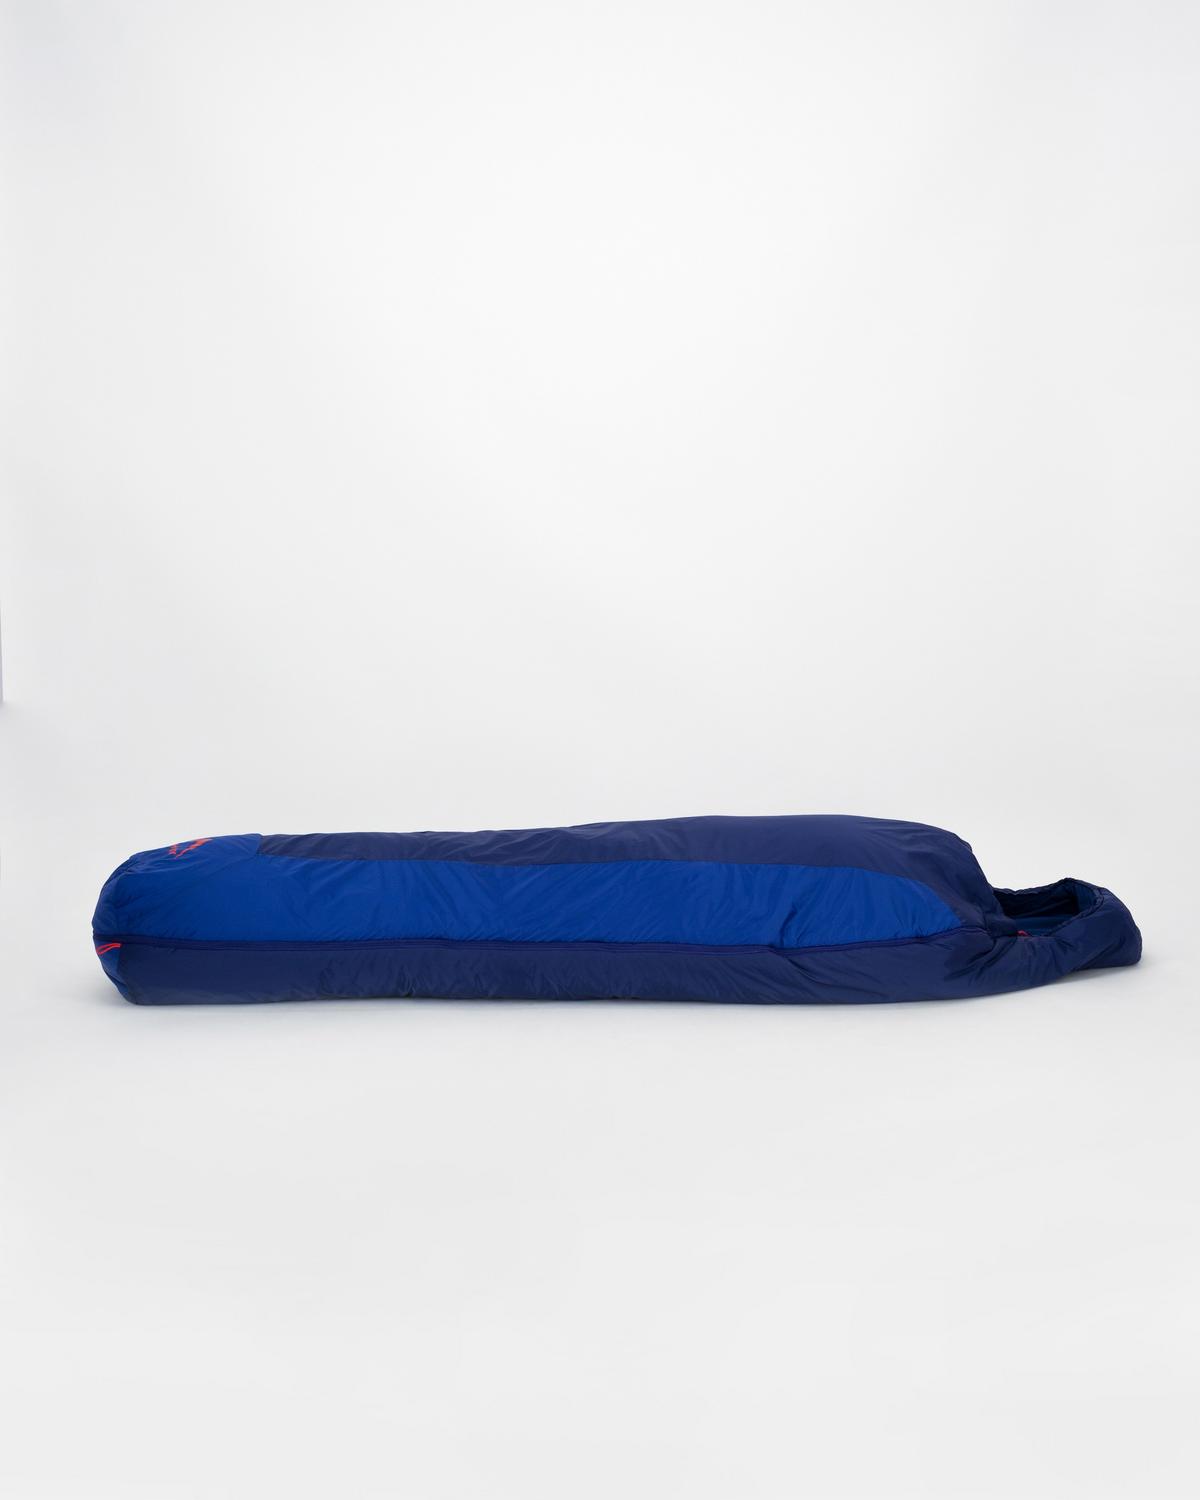 K-Way Draken 1250 Eco Sleeping Bag -  Blue